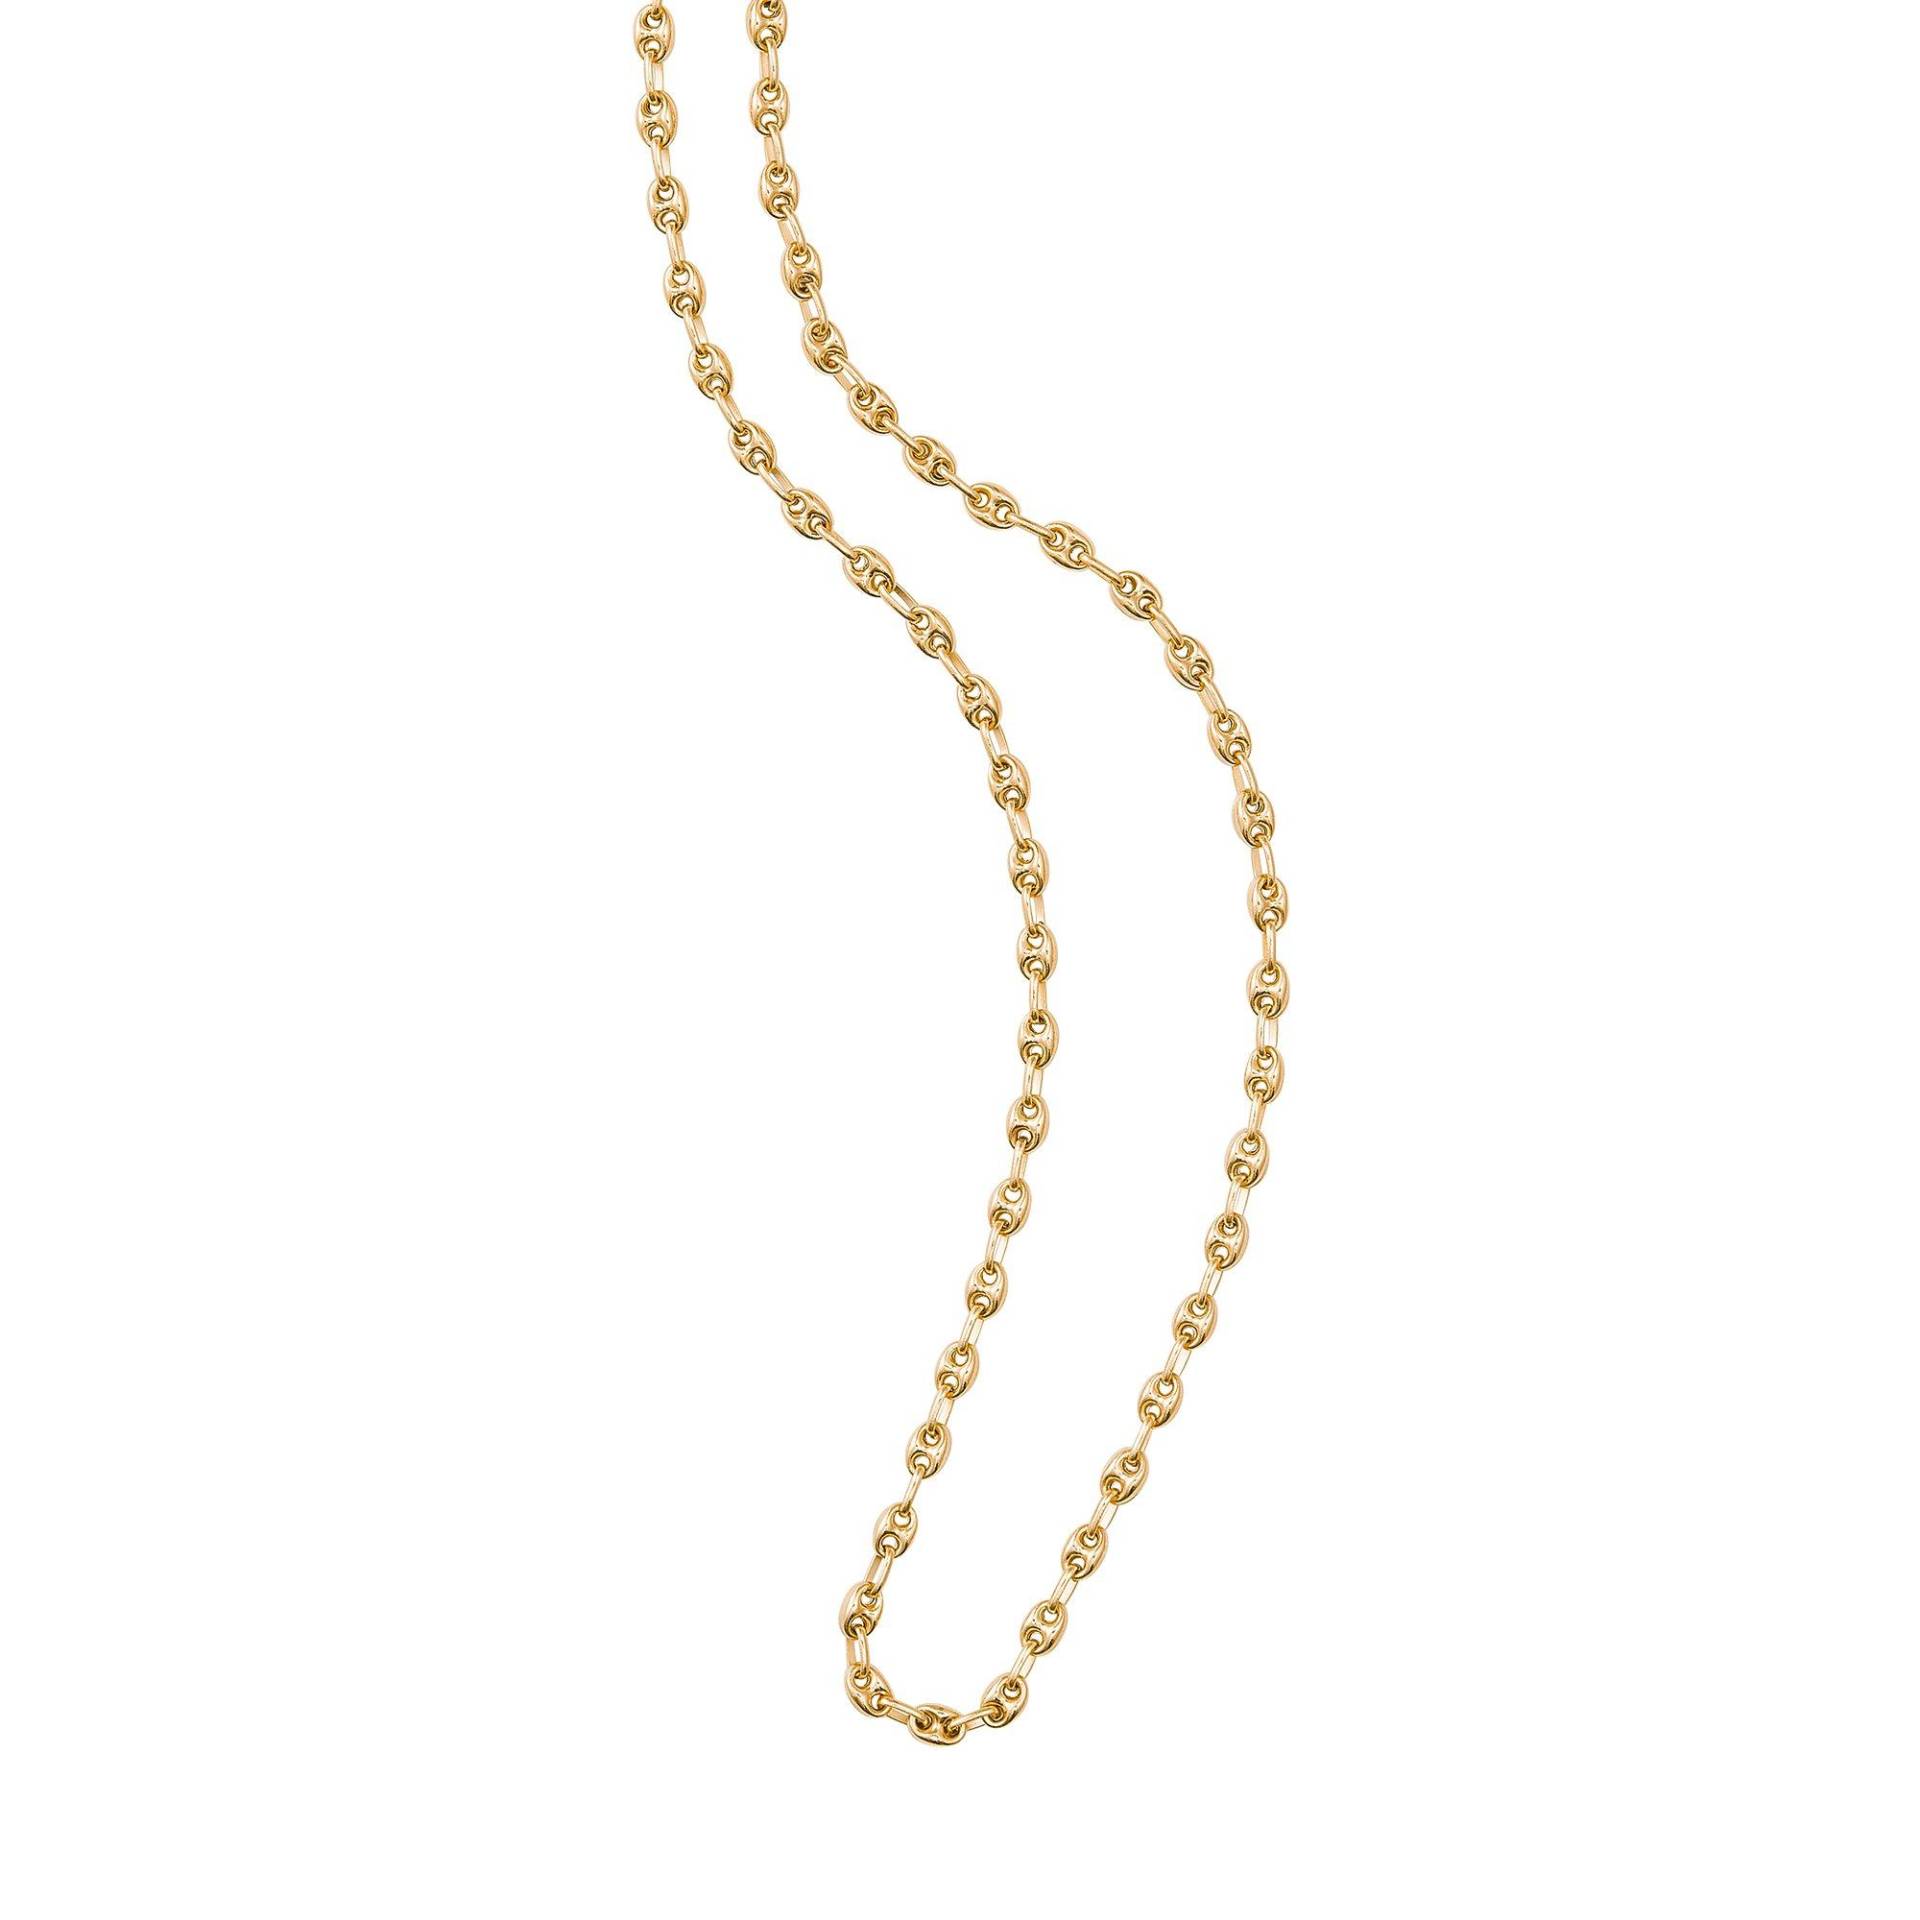 Halskette Damen Gelbgold  42 von L' Atelier Gold 18 Karat by Manor